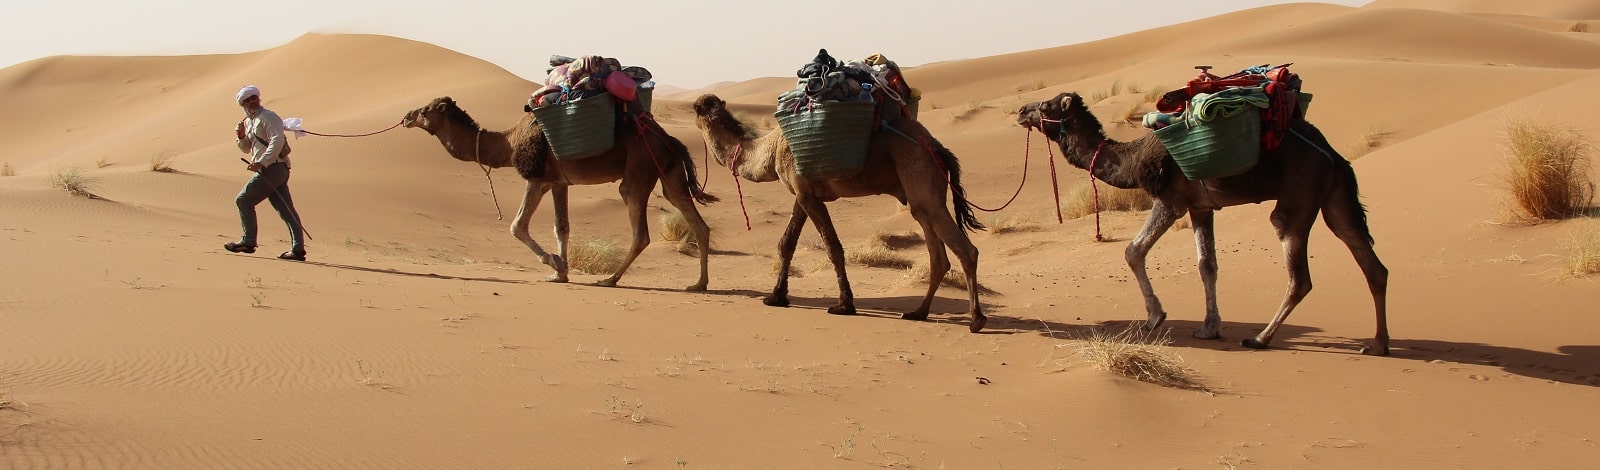 M'hamid camel tour